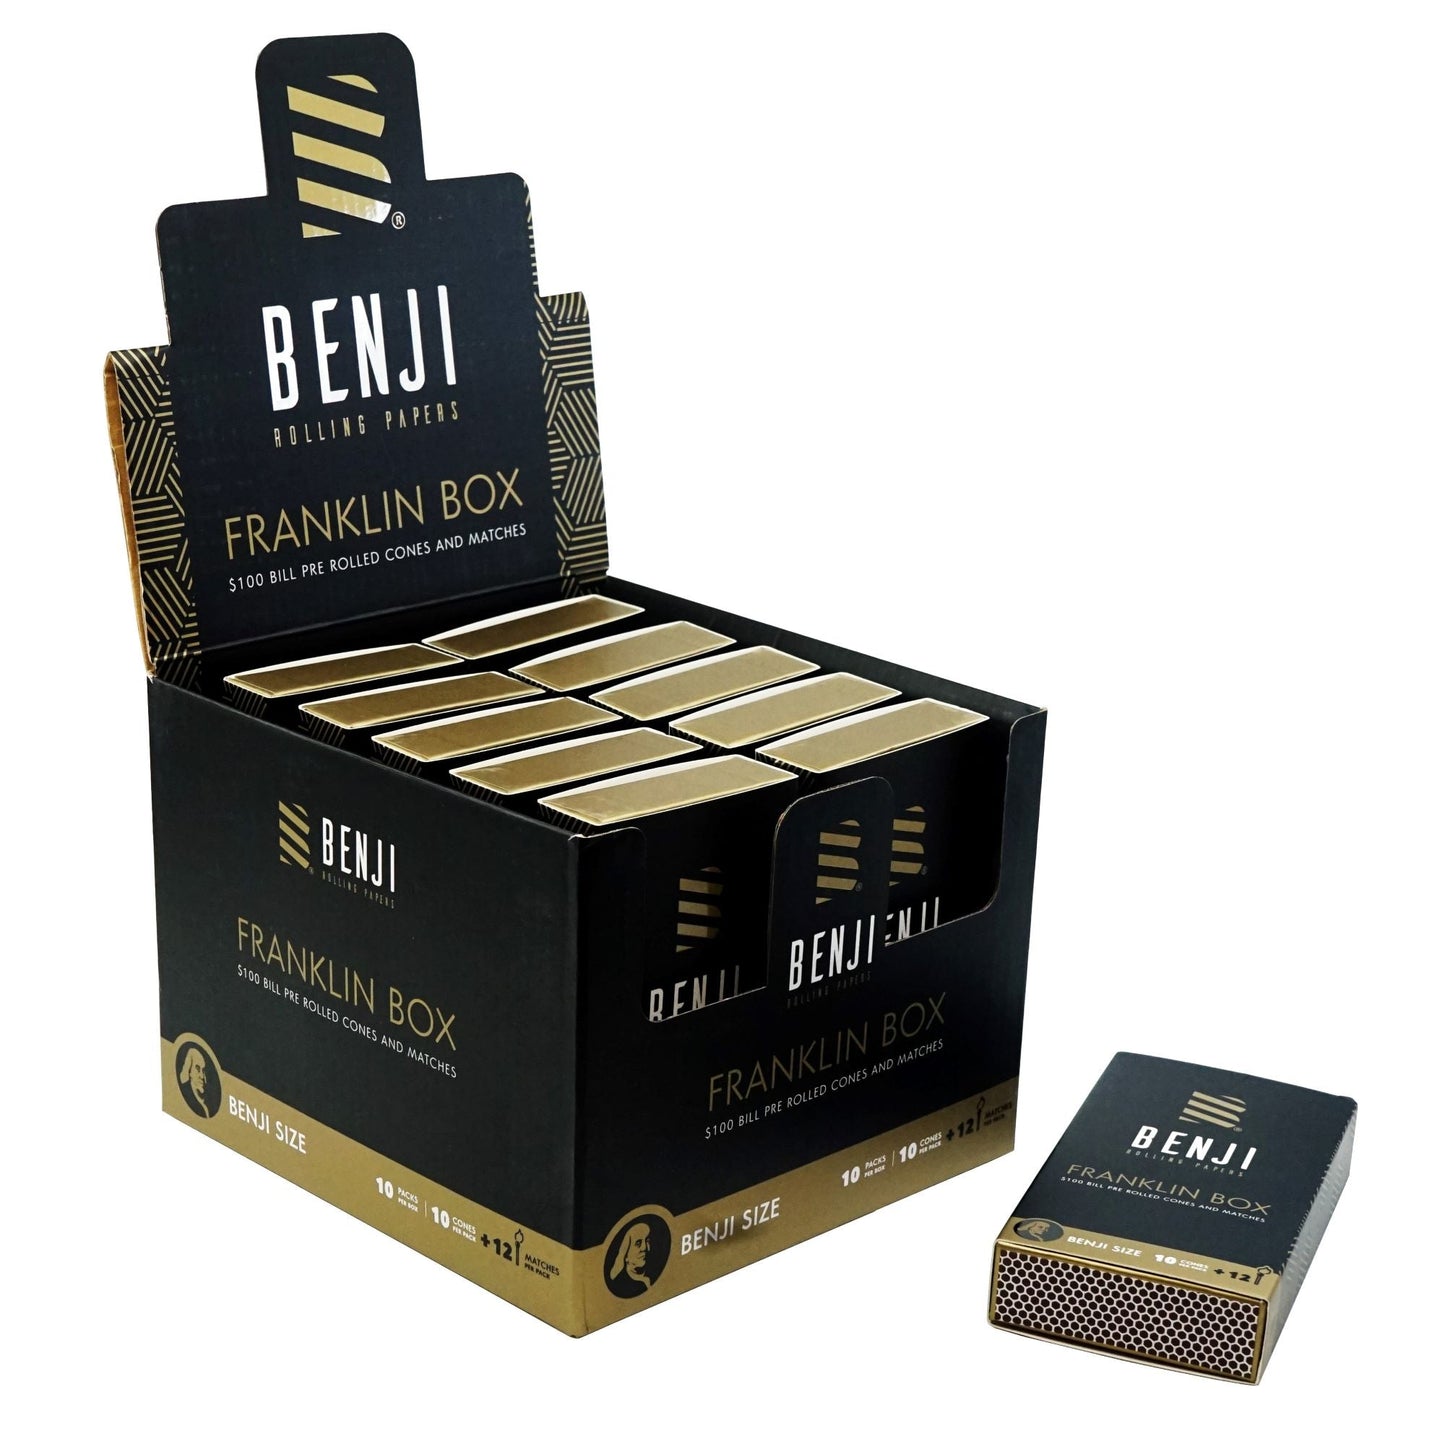 Benji Franklin Box